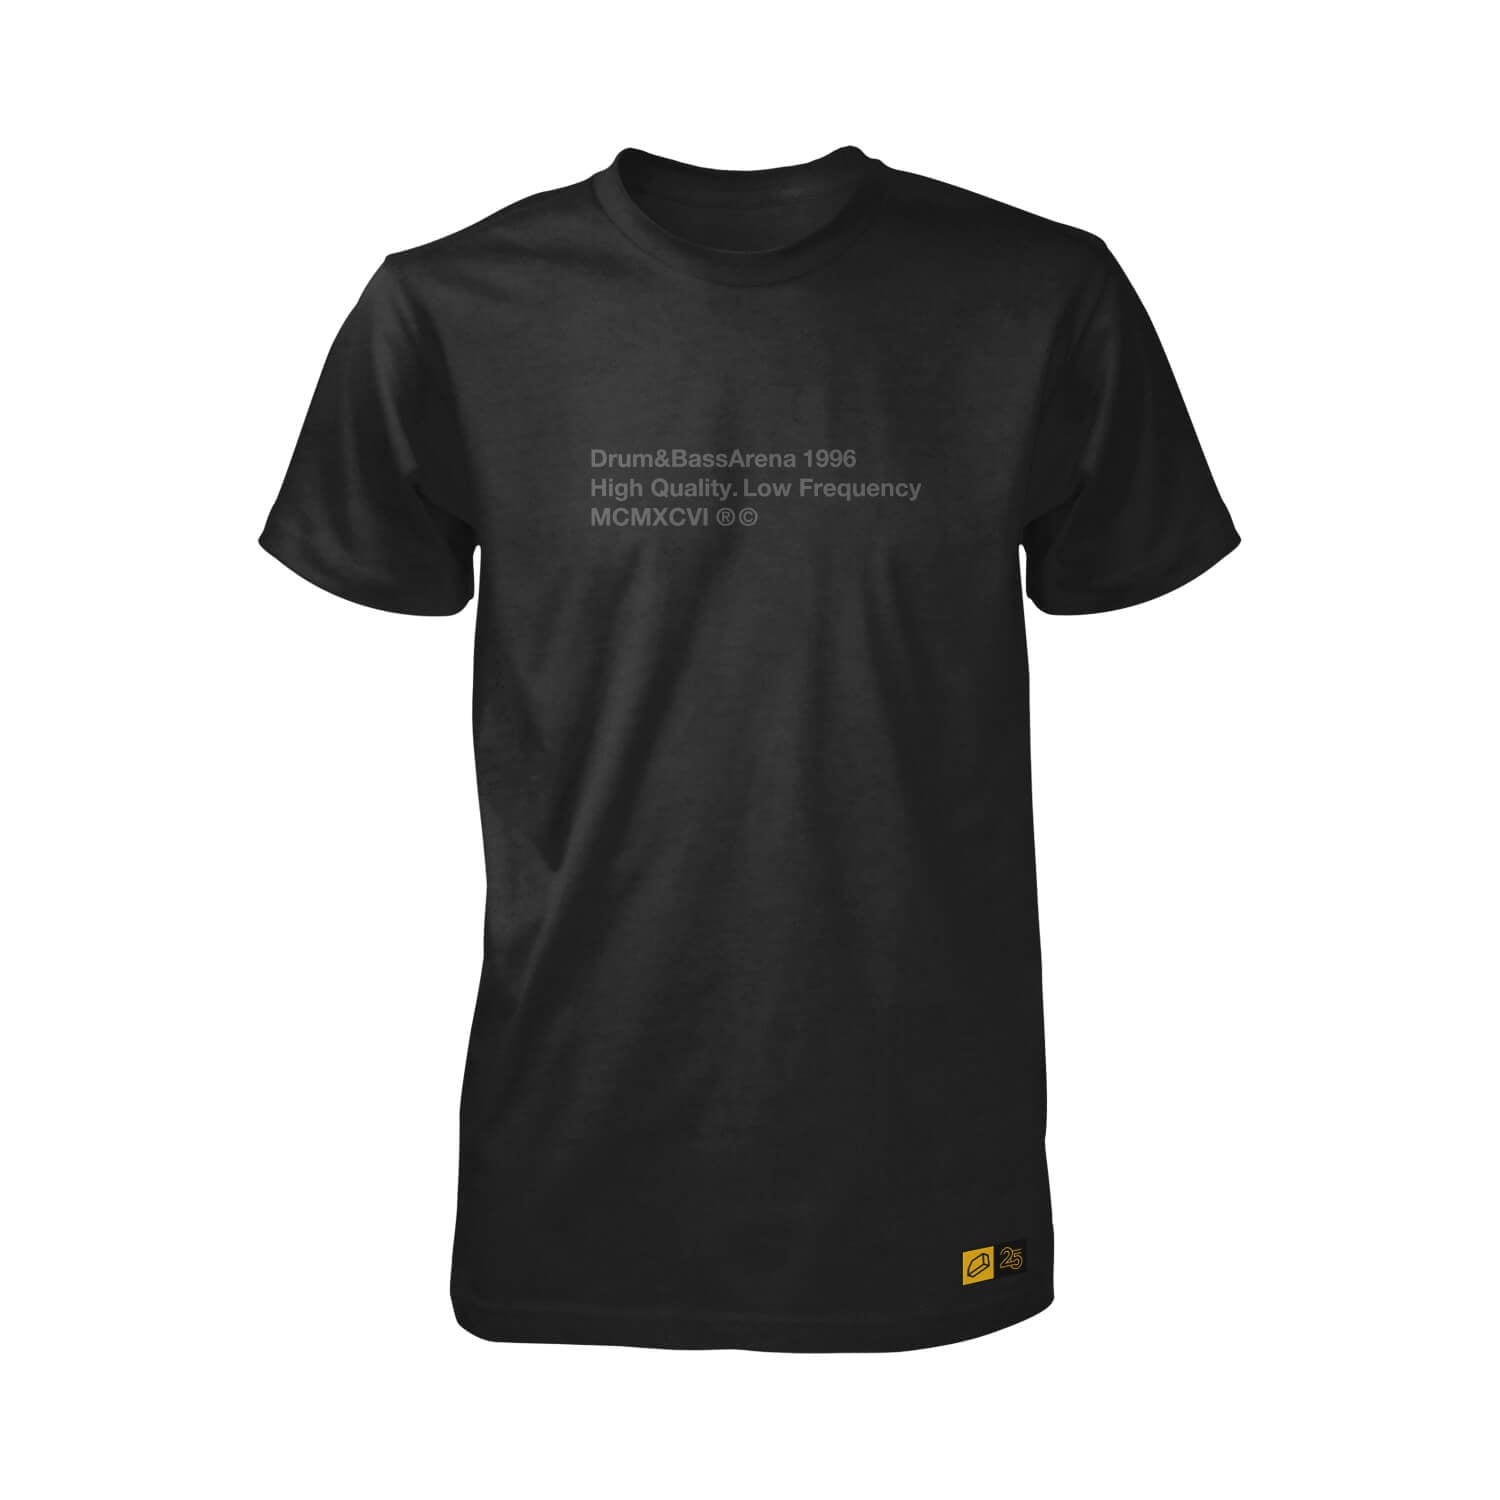 Edición limitada de la camiseta Stealth 25 años (unisex)